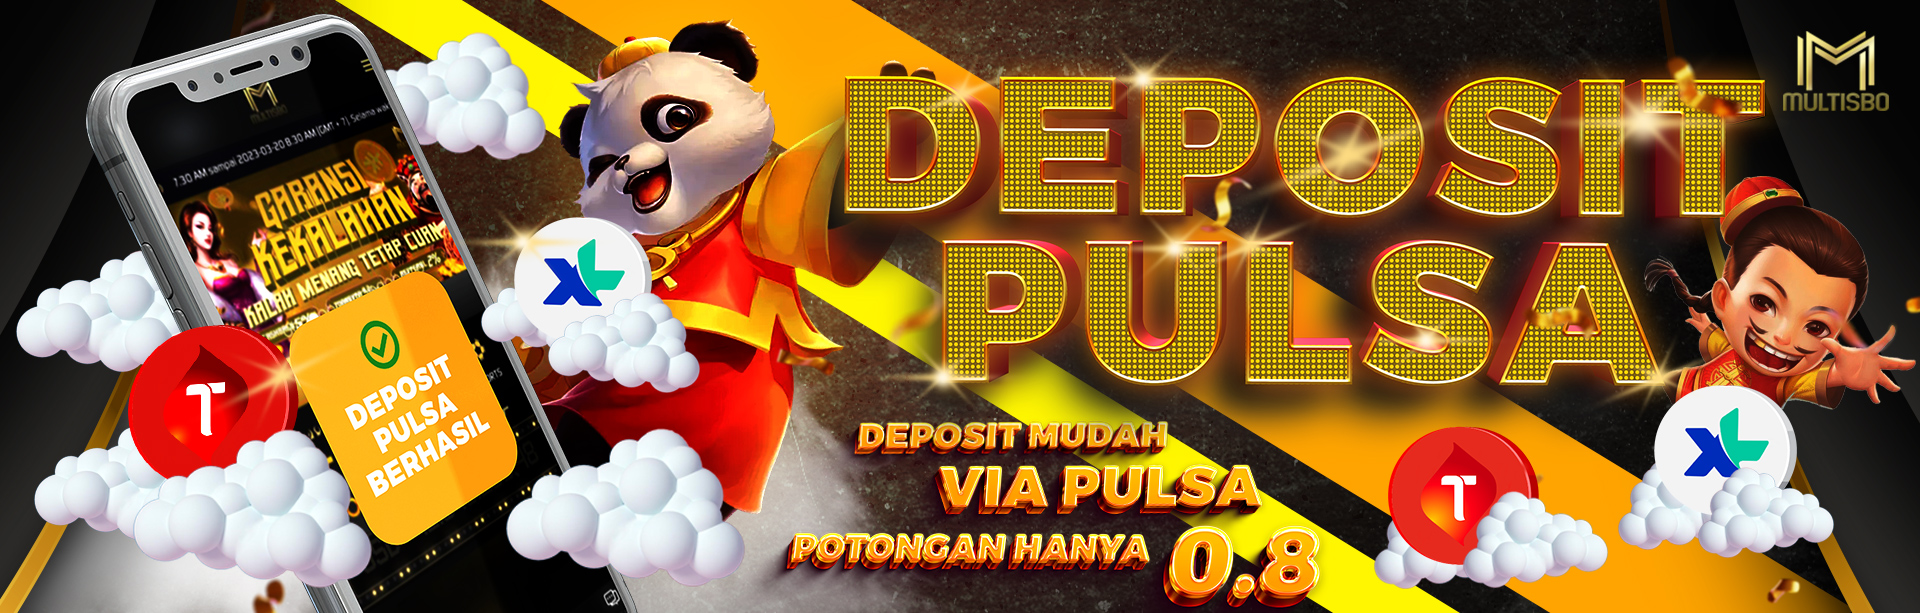 Deposit Pulsa MULTISBO